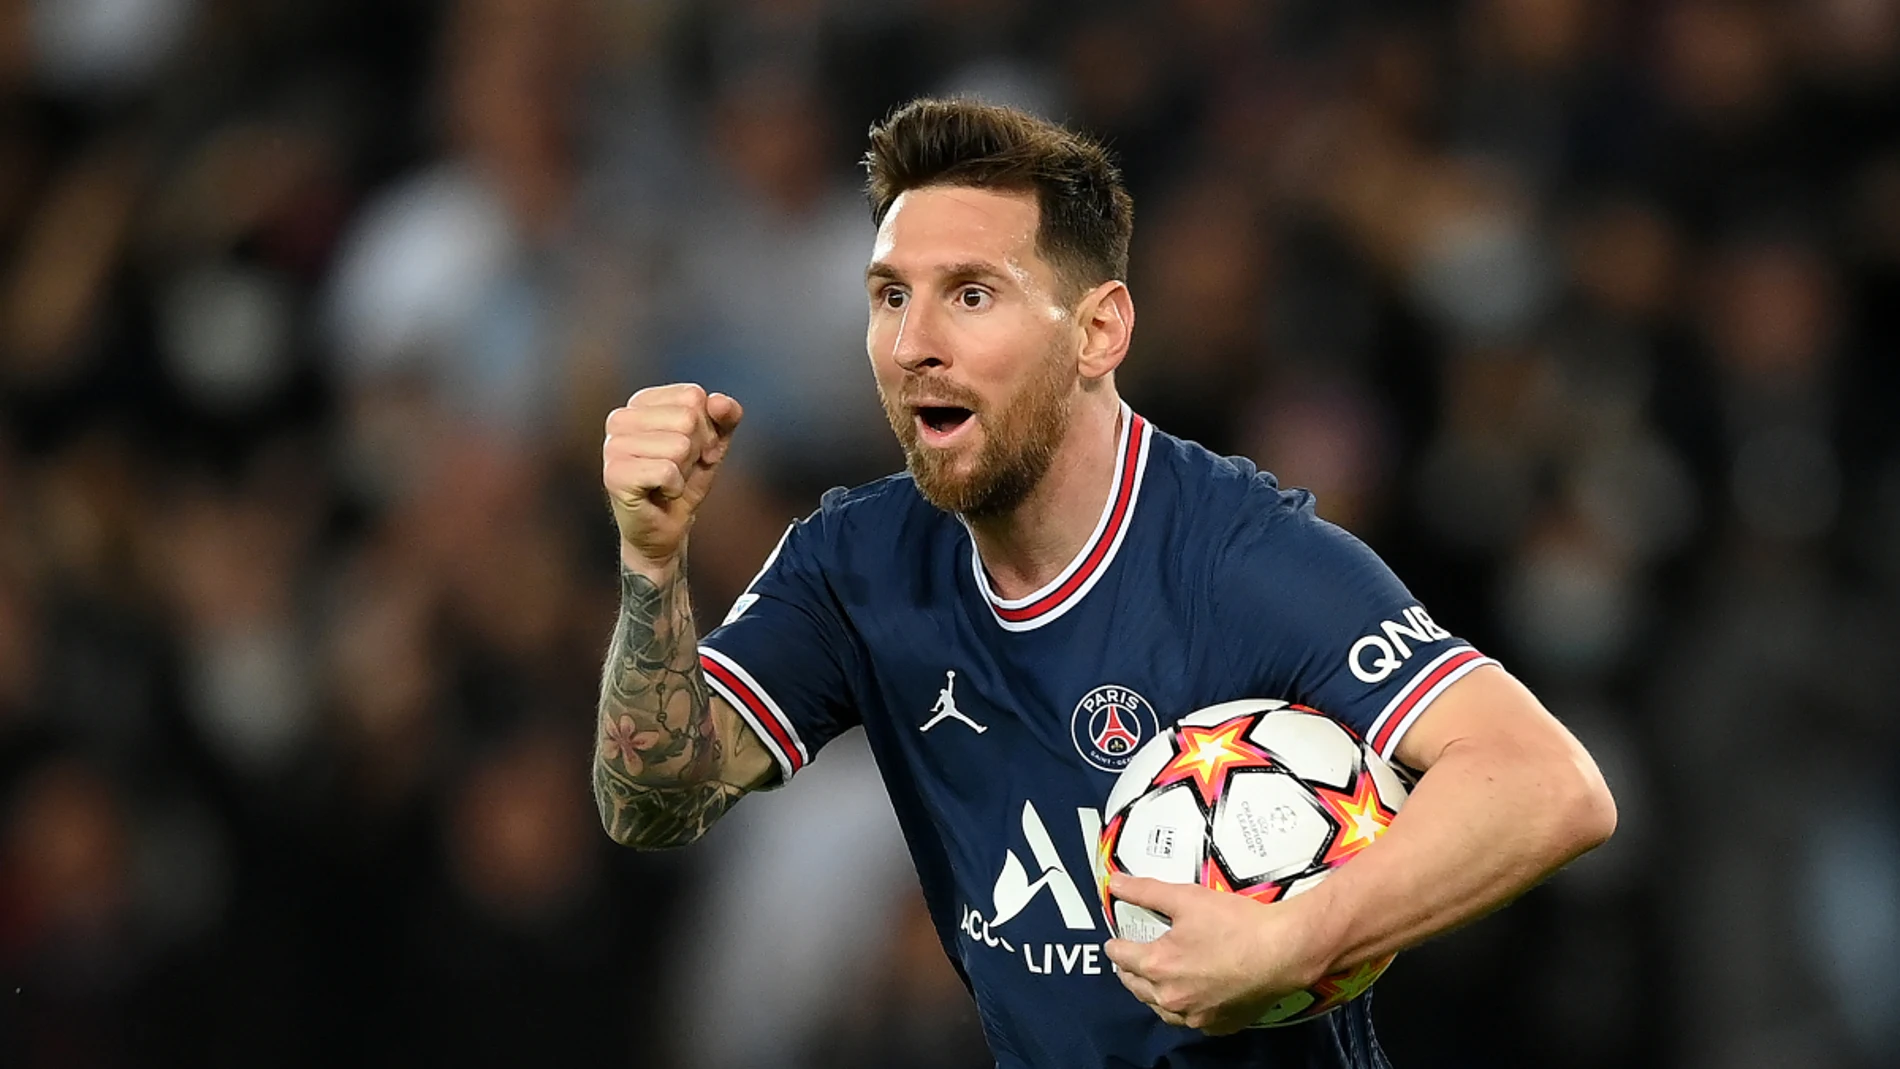 Messi celebra un gol con el PSG